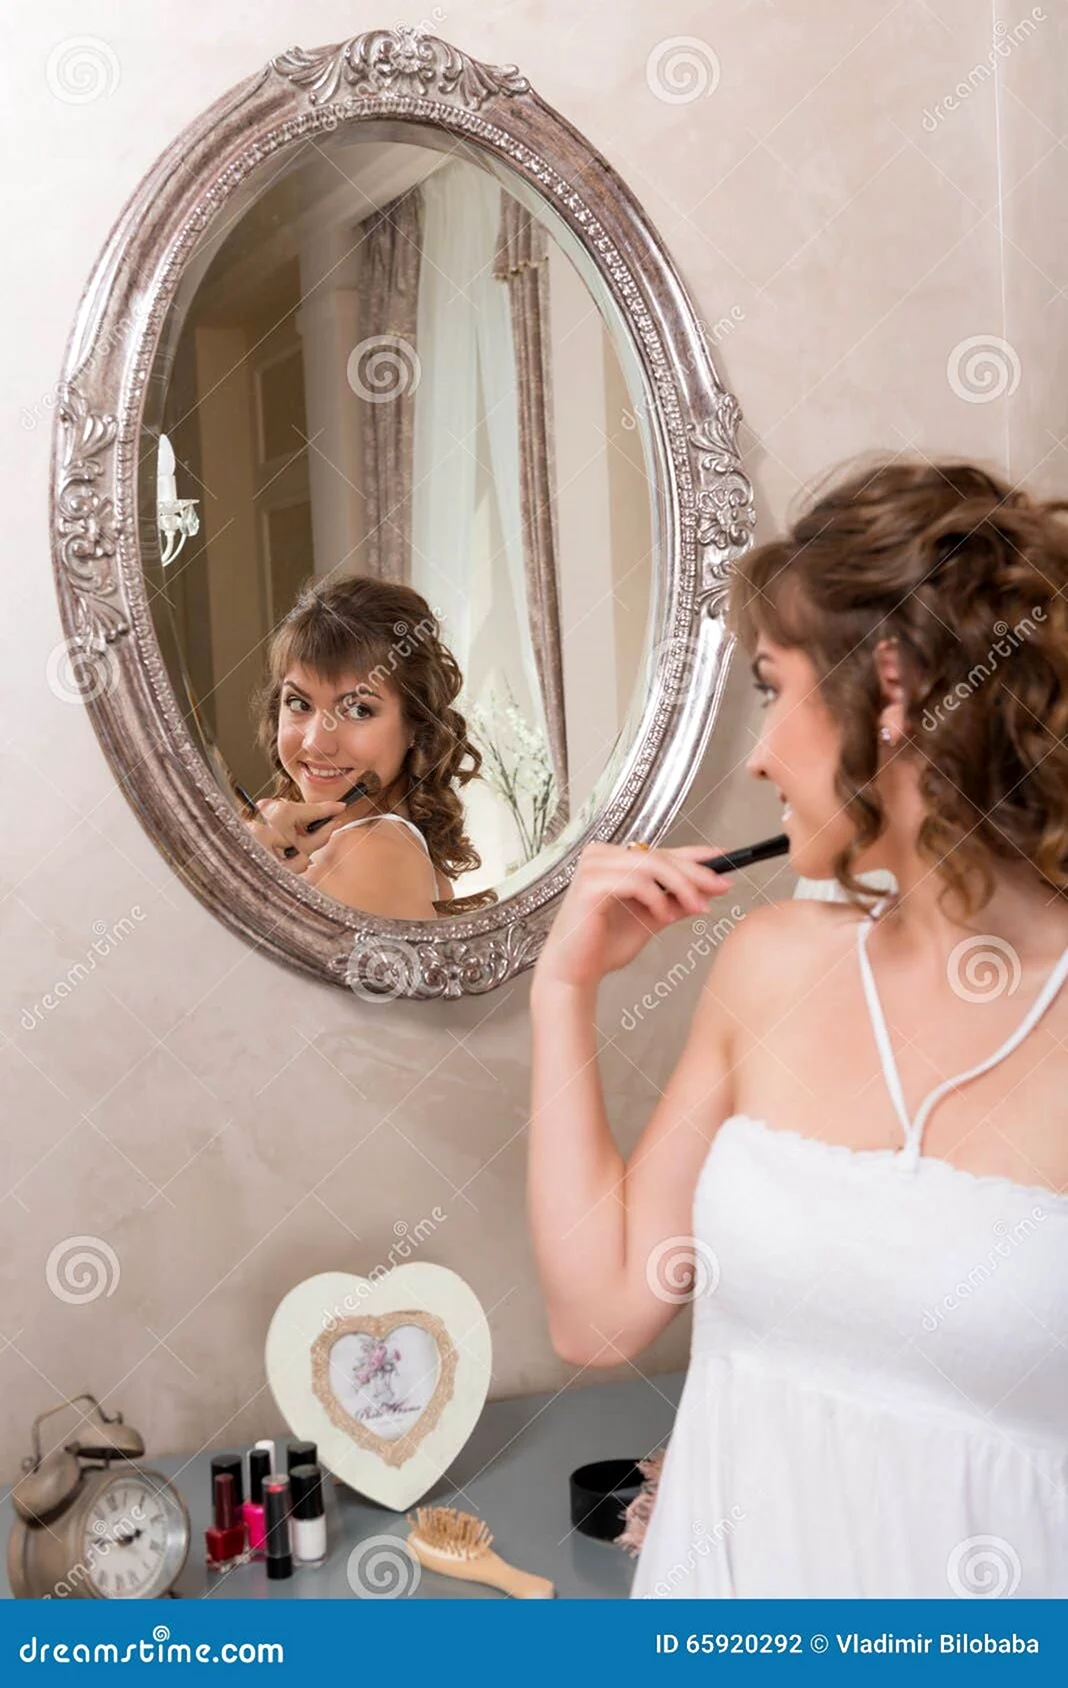 Смотреться в зеркало. Красивая девушка